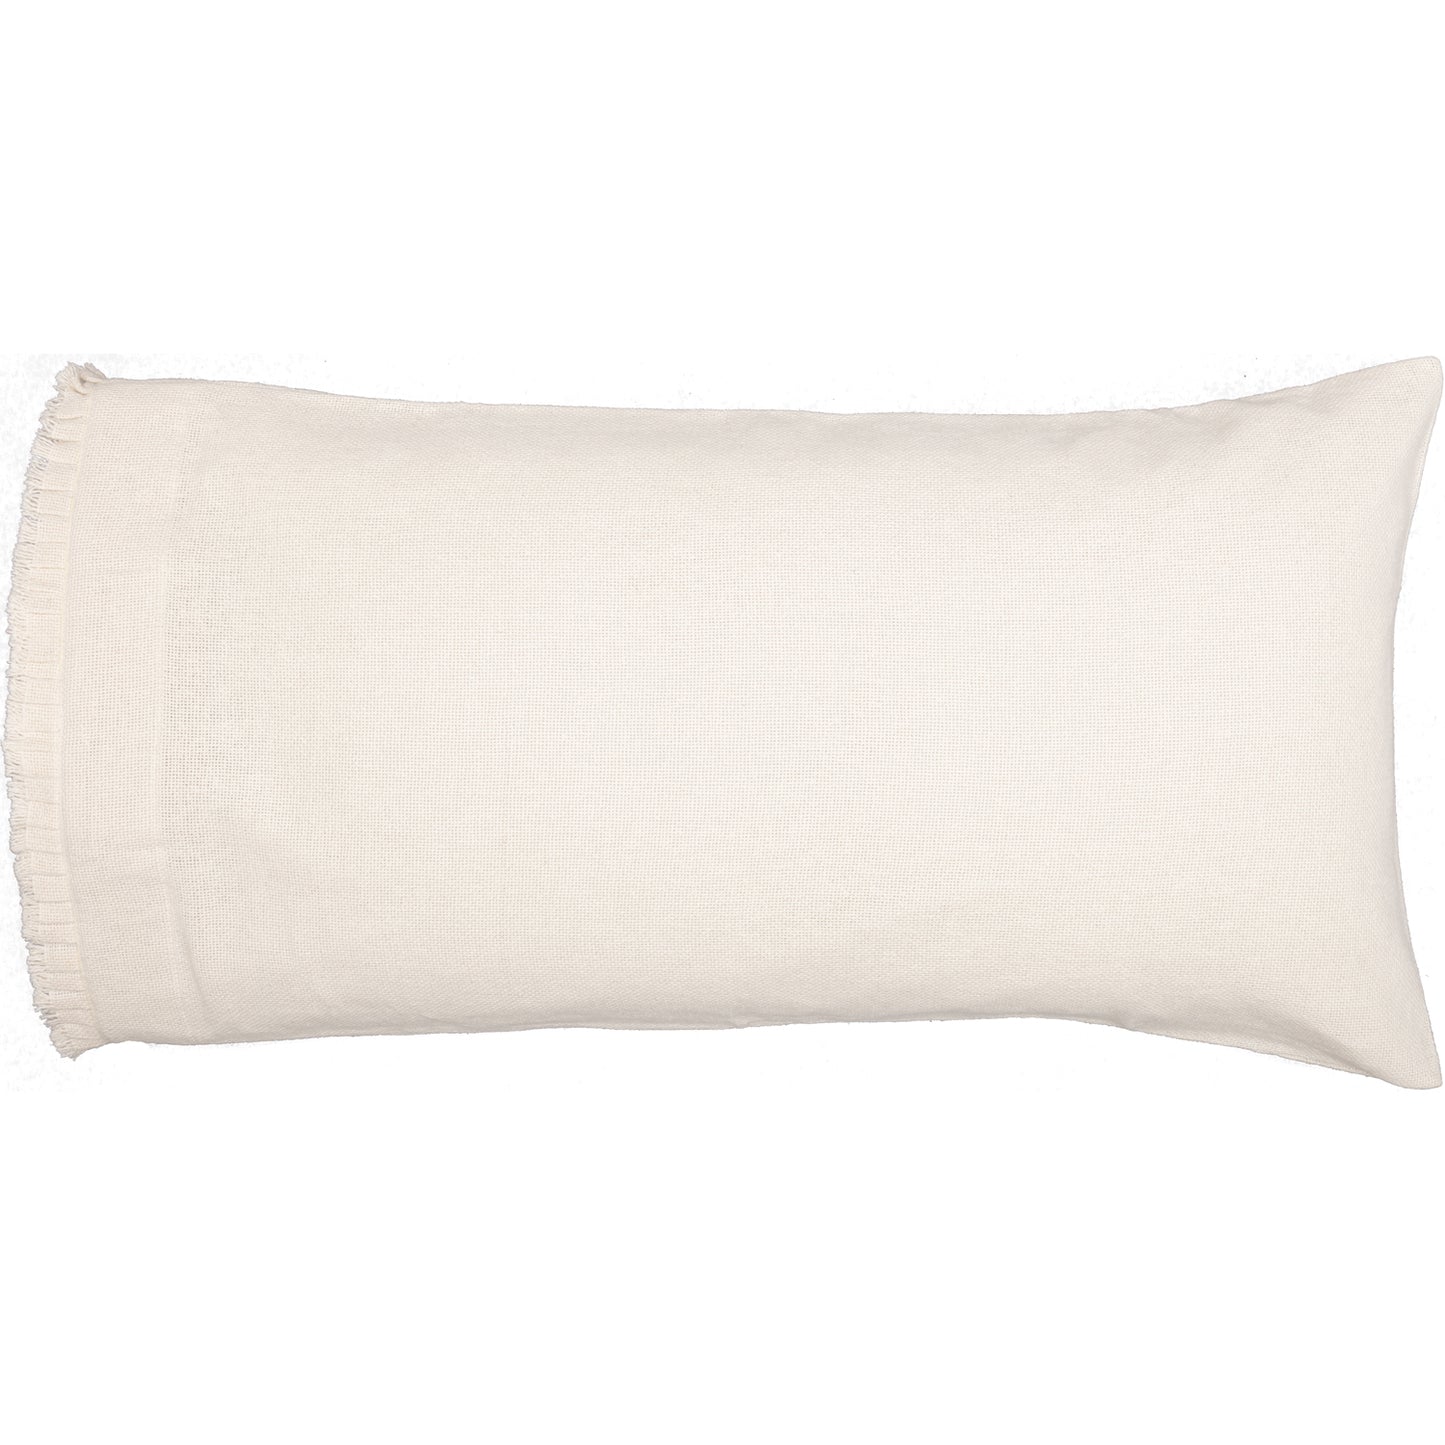 51817-Burlap-Antique-White-King-Pillow-Case-w-Fringed-Ruffle-Set-of-2-21x40-image-6